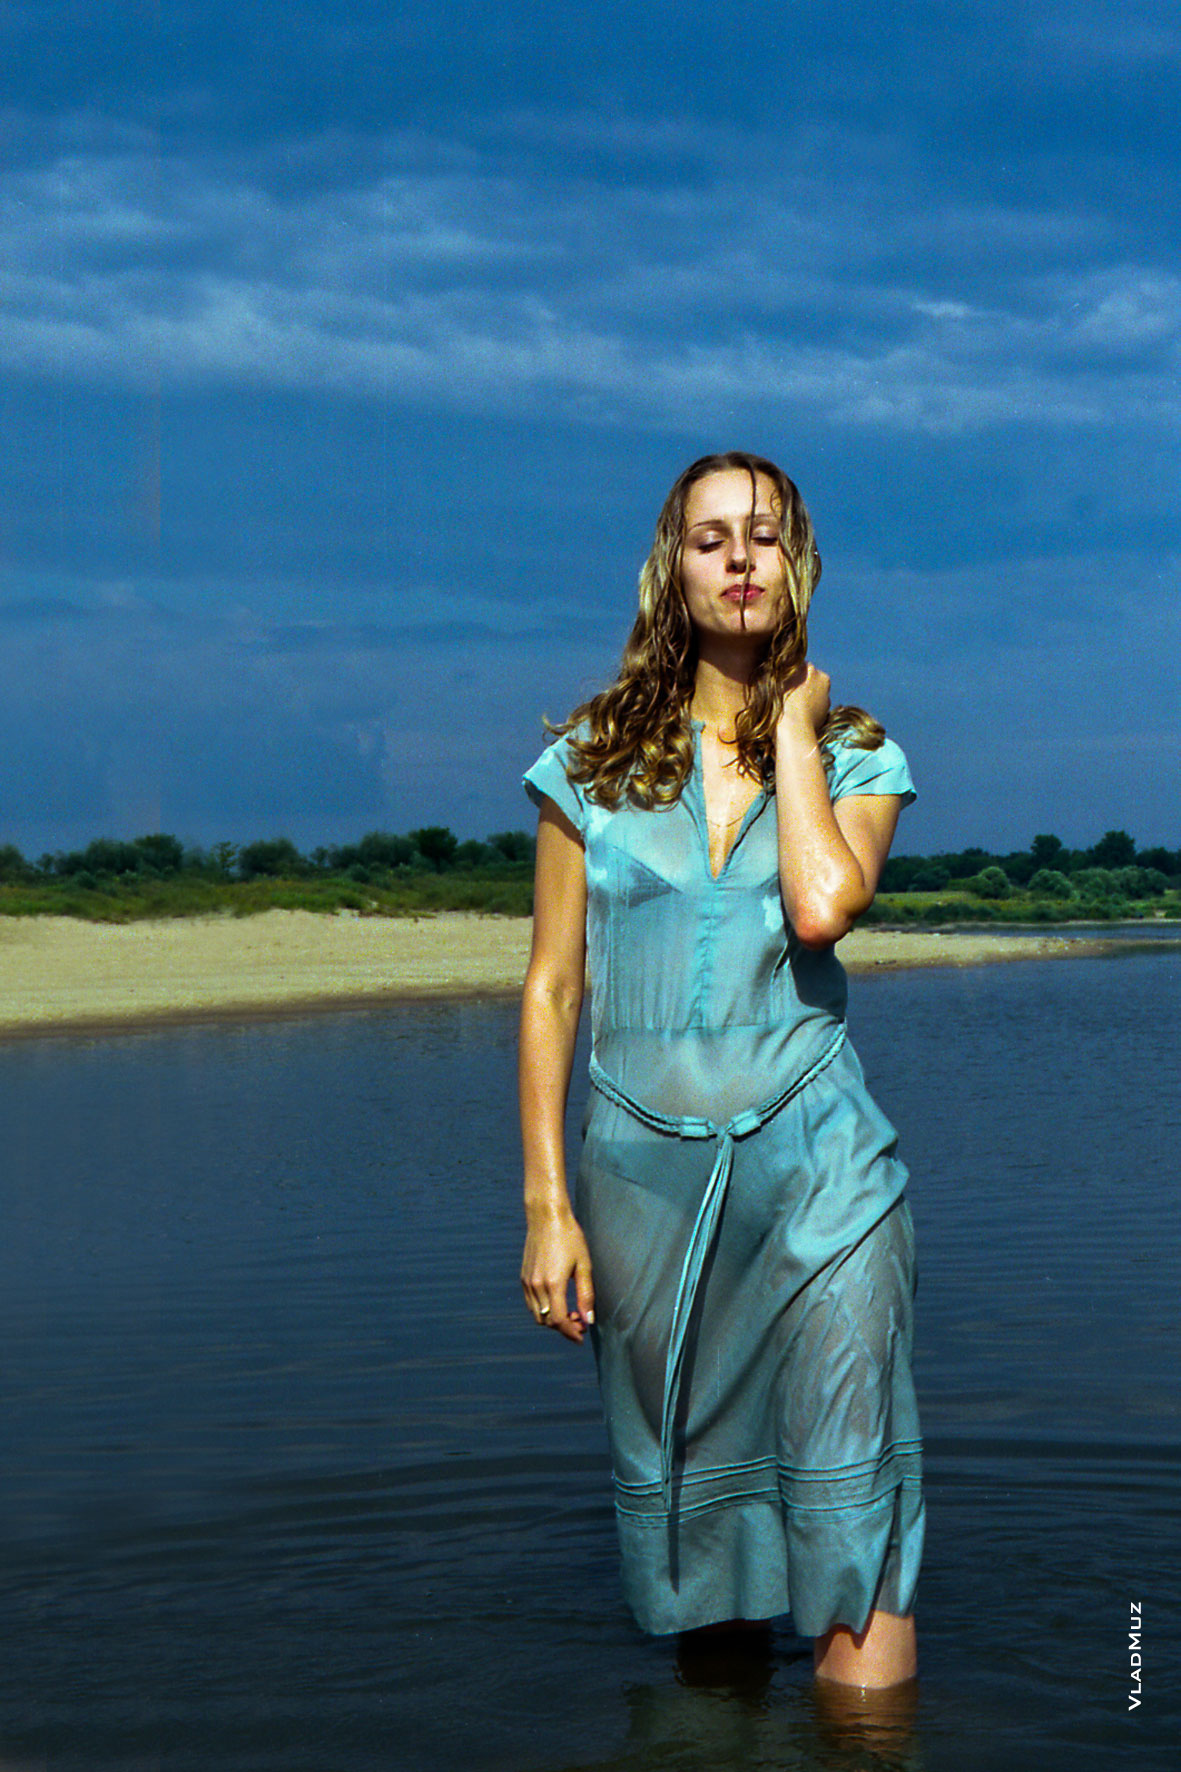 Фото девушки в полный рост, стоящей в воде, на фоне реки и синего неба